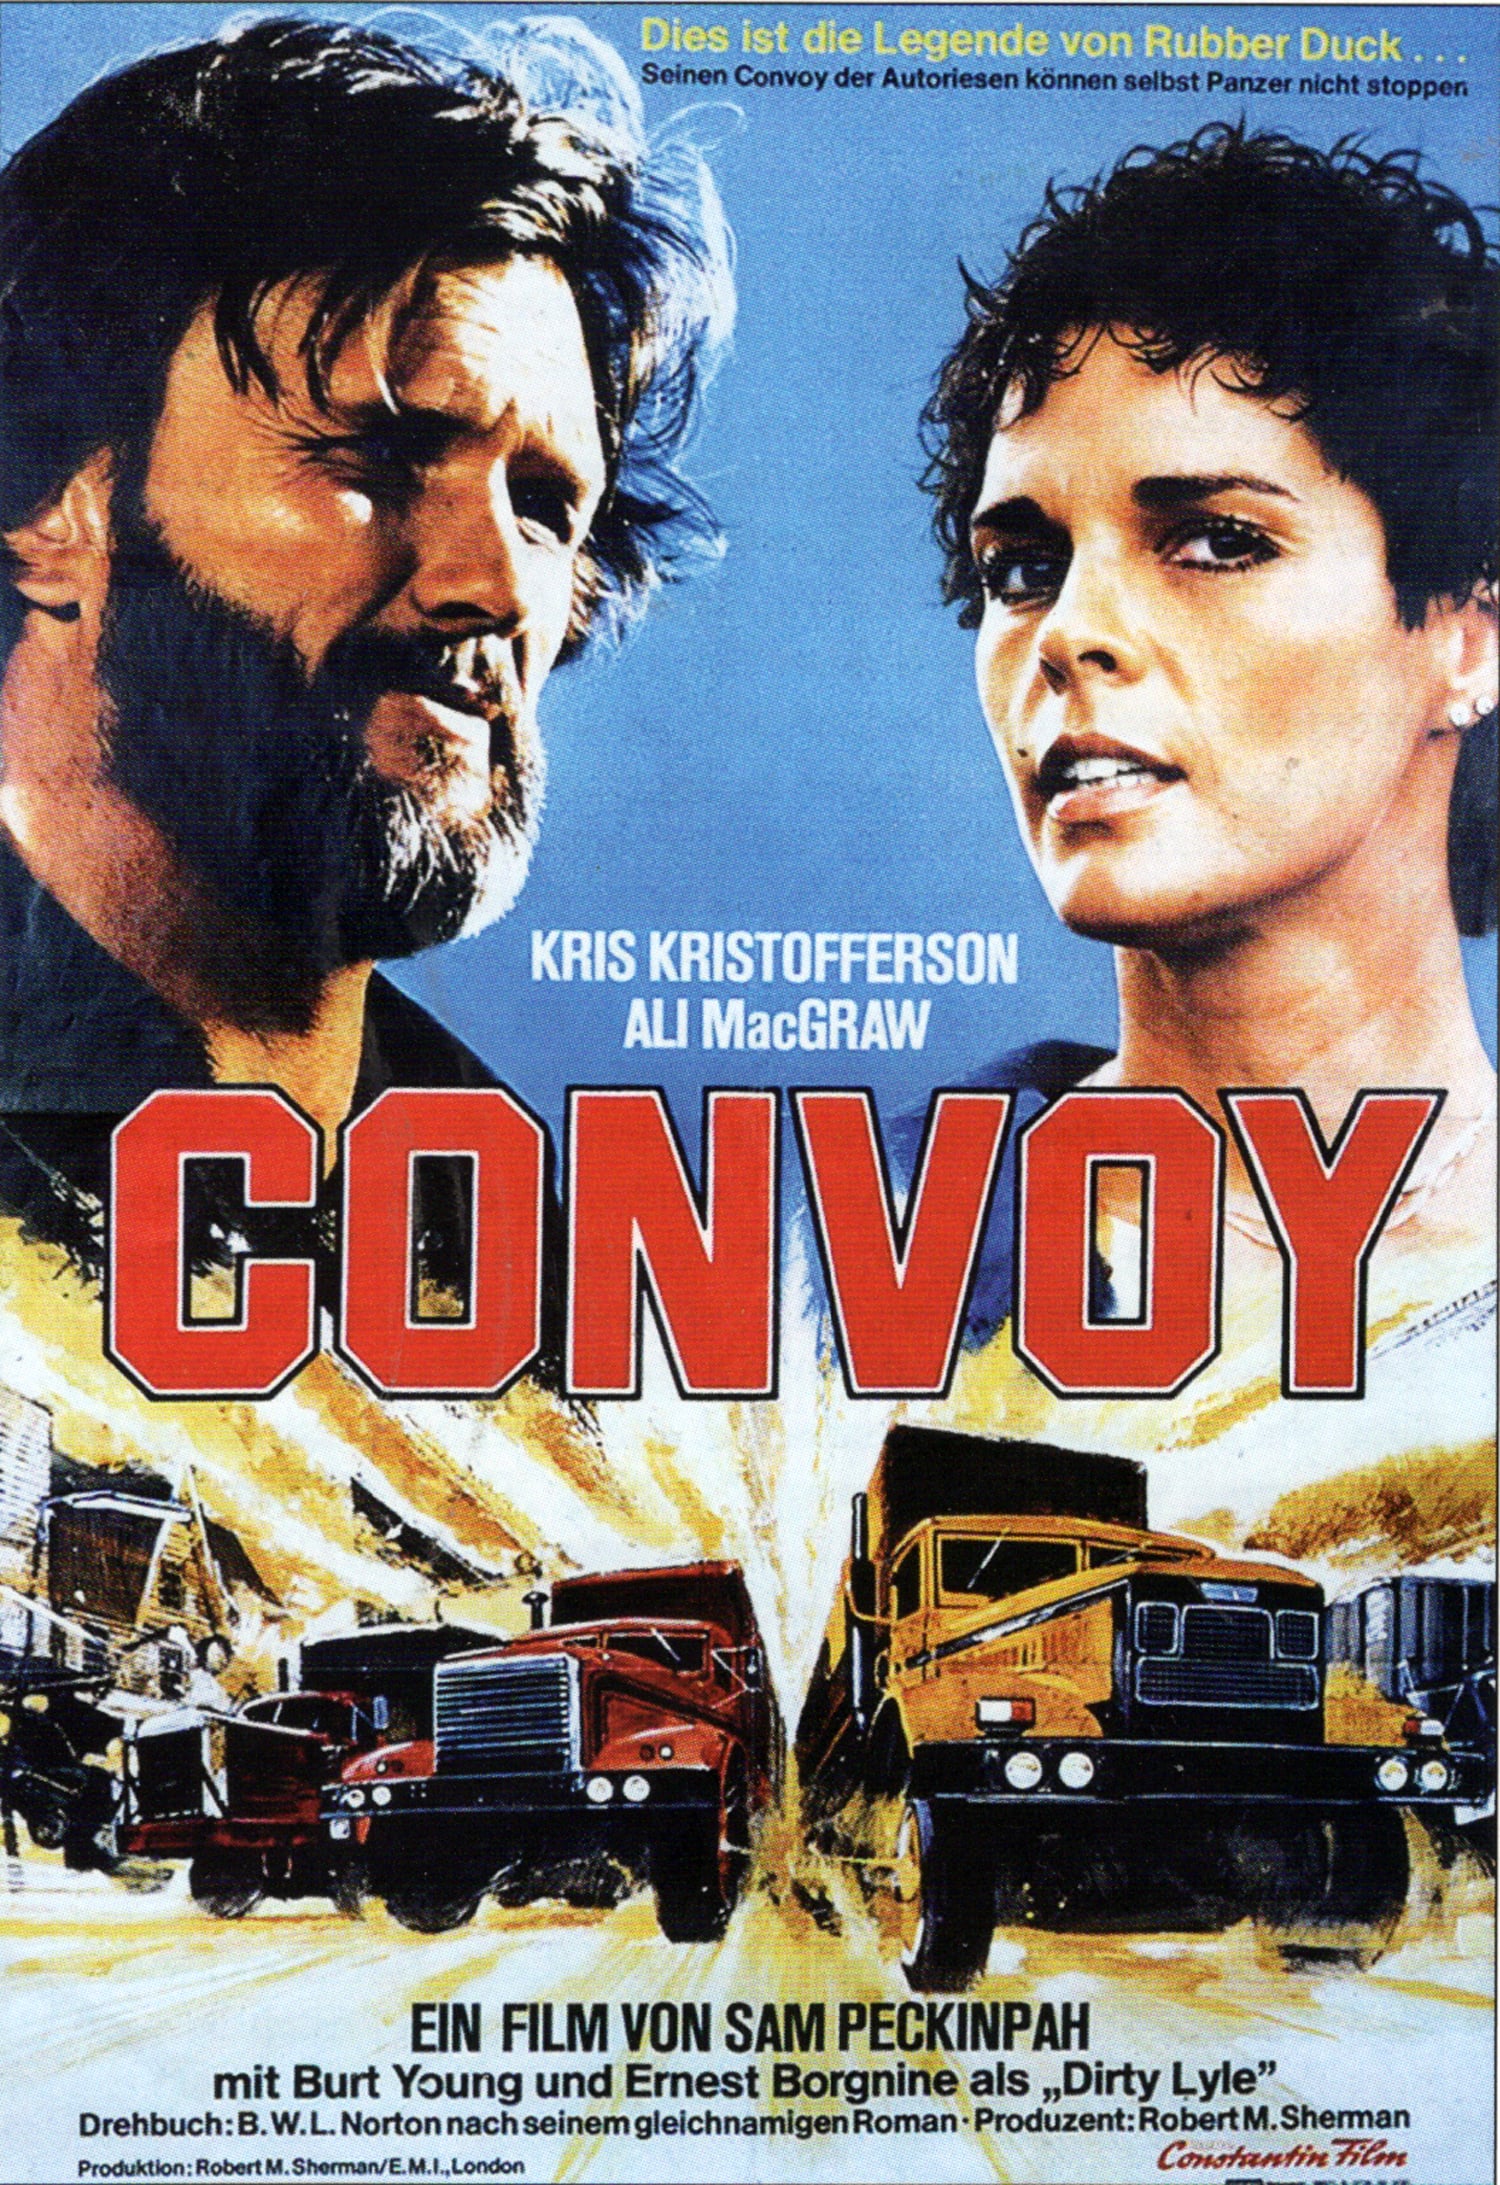 Plakat von "Convoy"